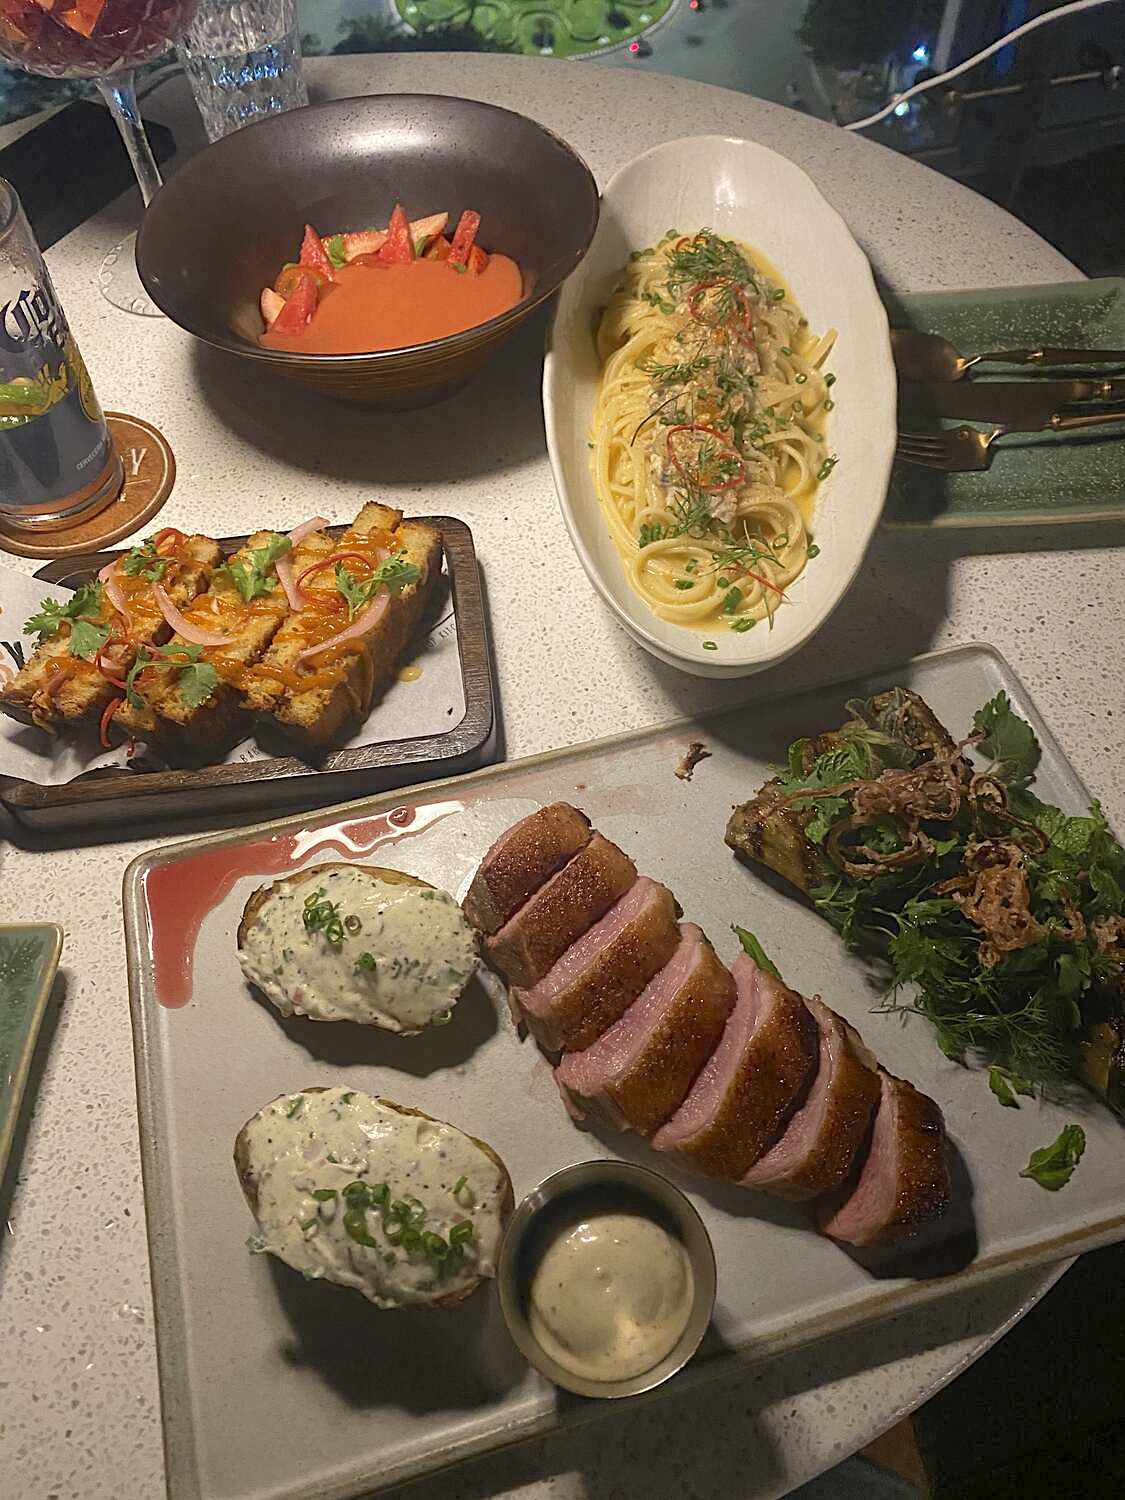 Mixed grill meat platter at sky bar in da nang